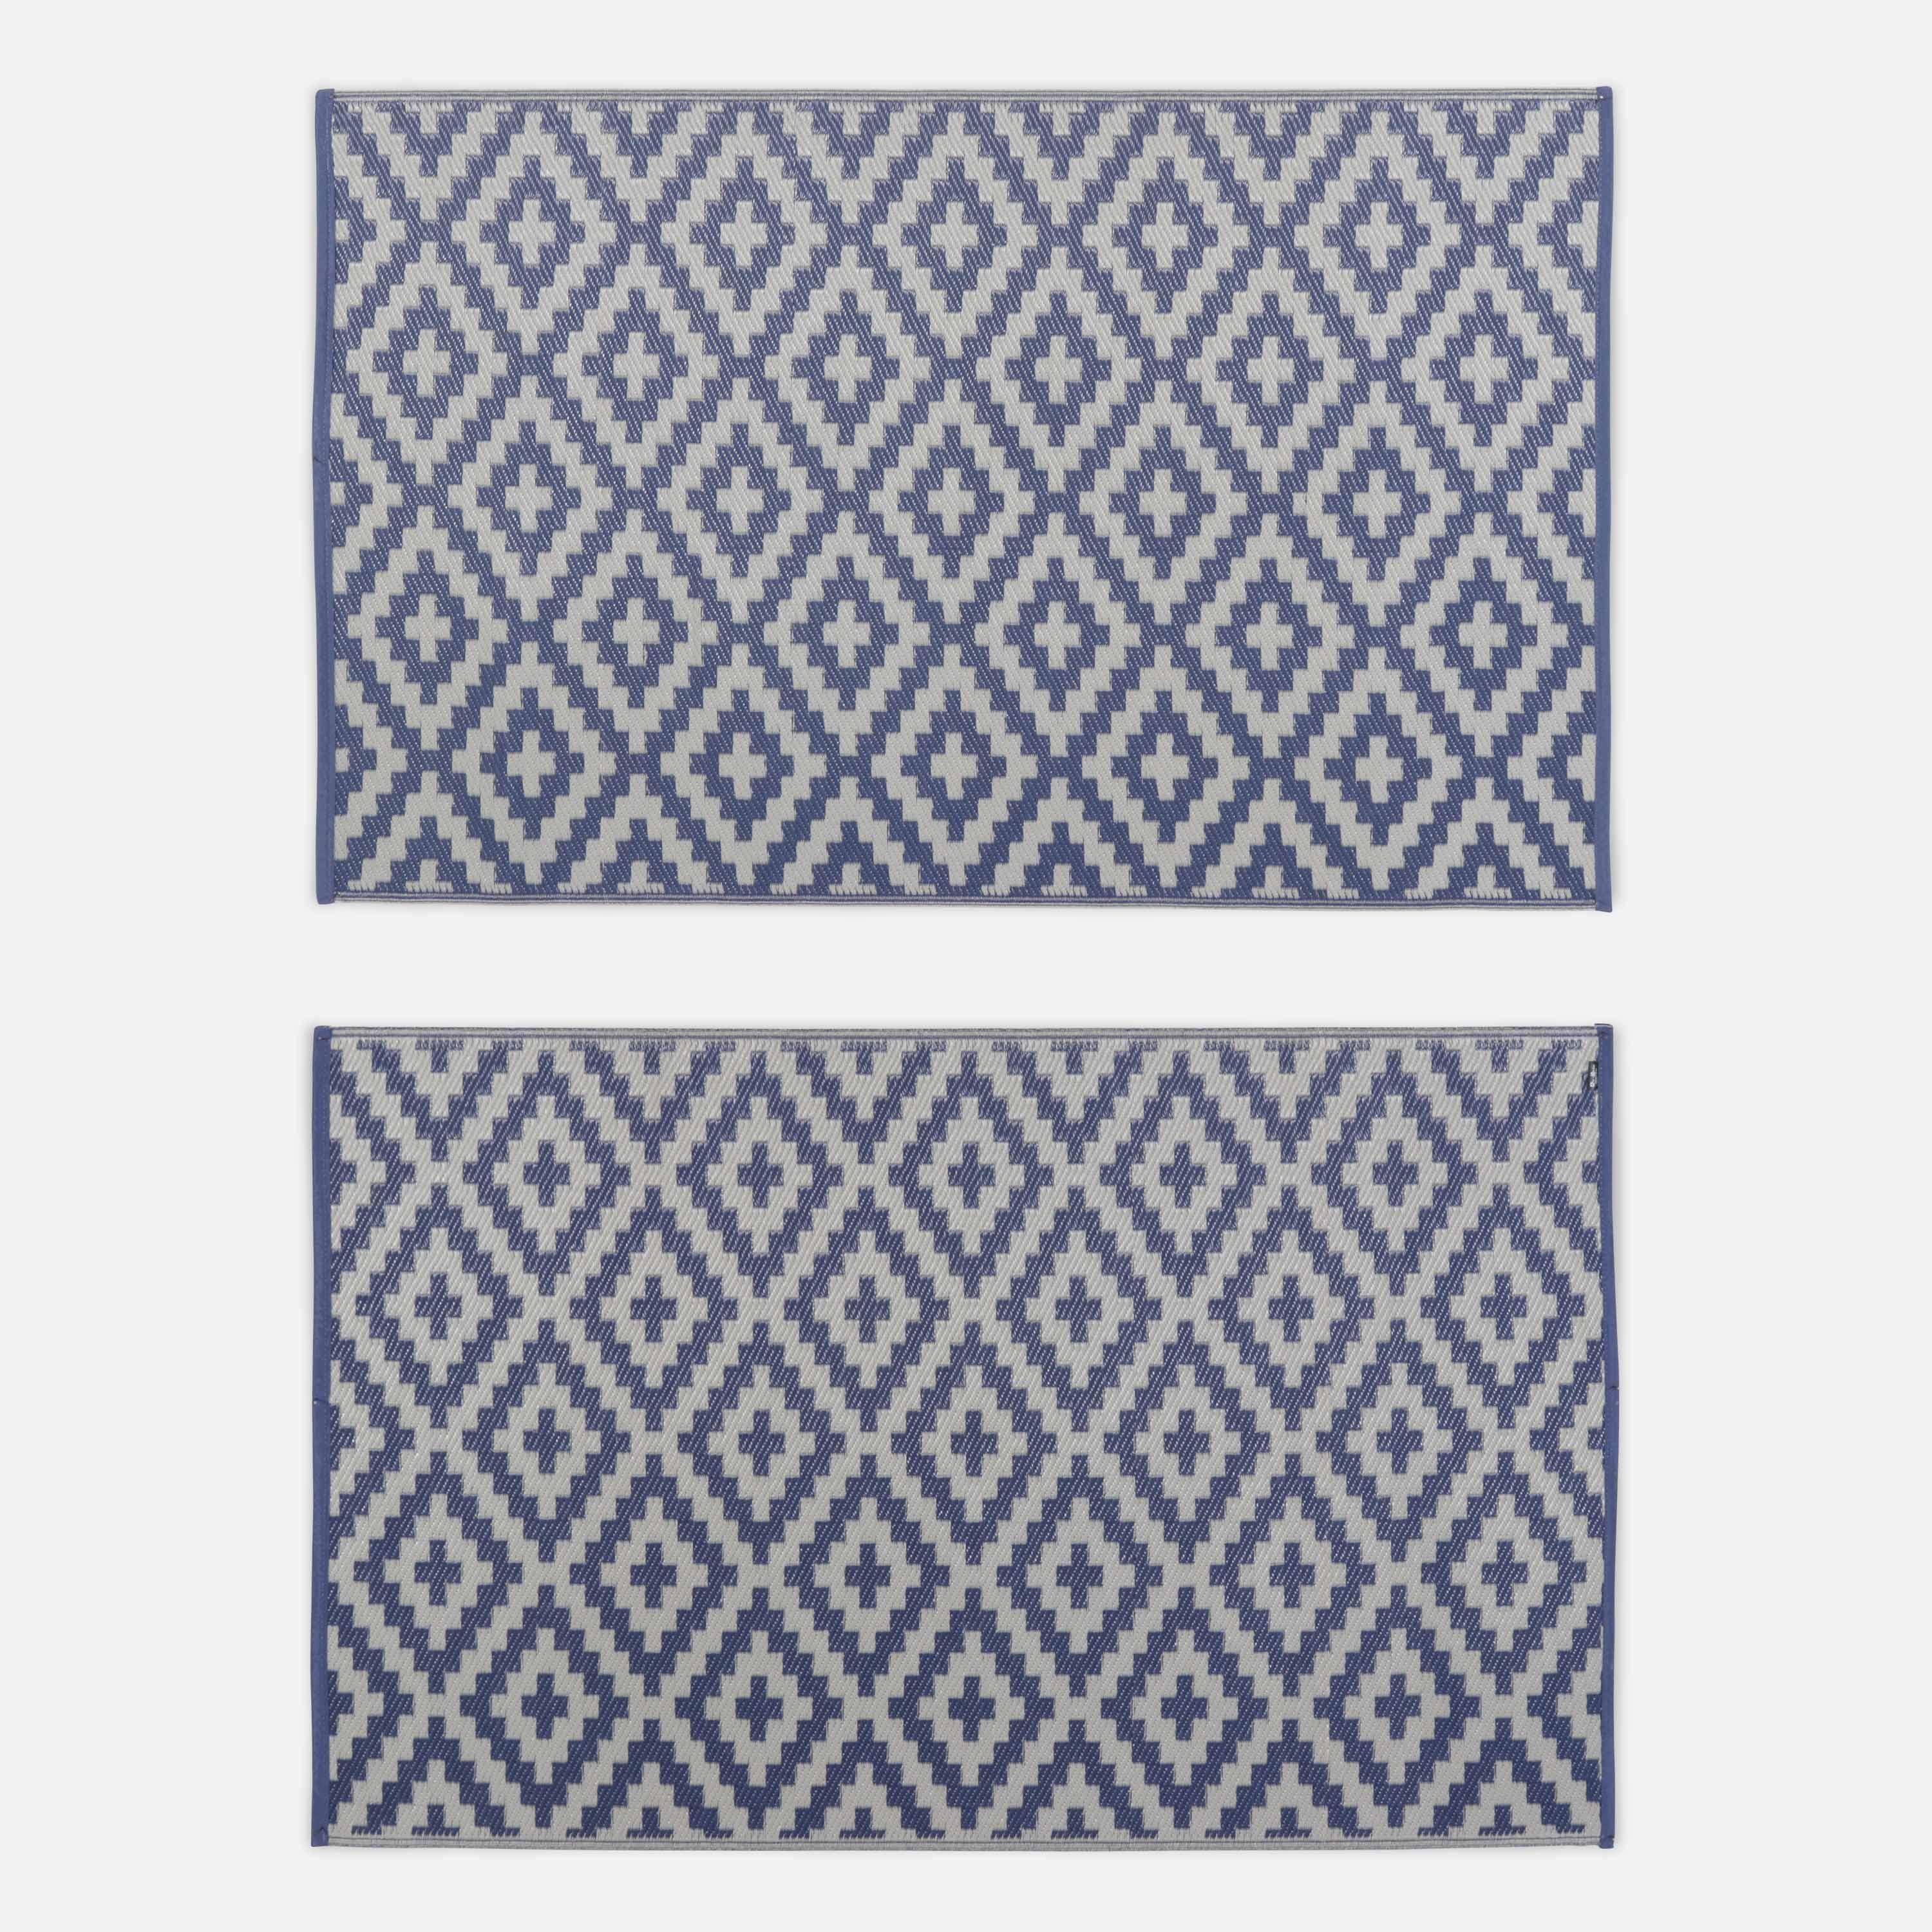 Tapis d’extérieur 120x180cm STOCKHOLM - Rectangulaire, motif losanges bleu / beige, jacquard, réversible, indoor / outdoor, Photo2